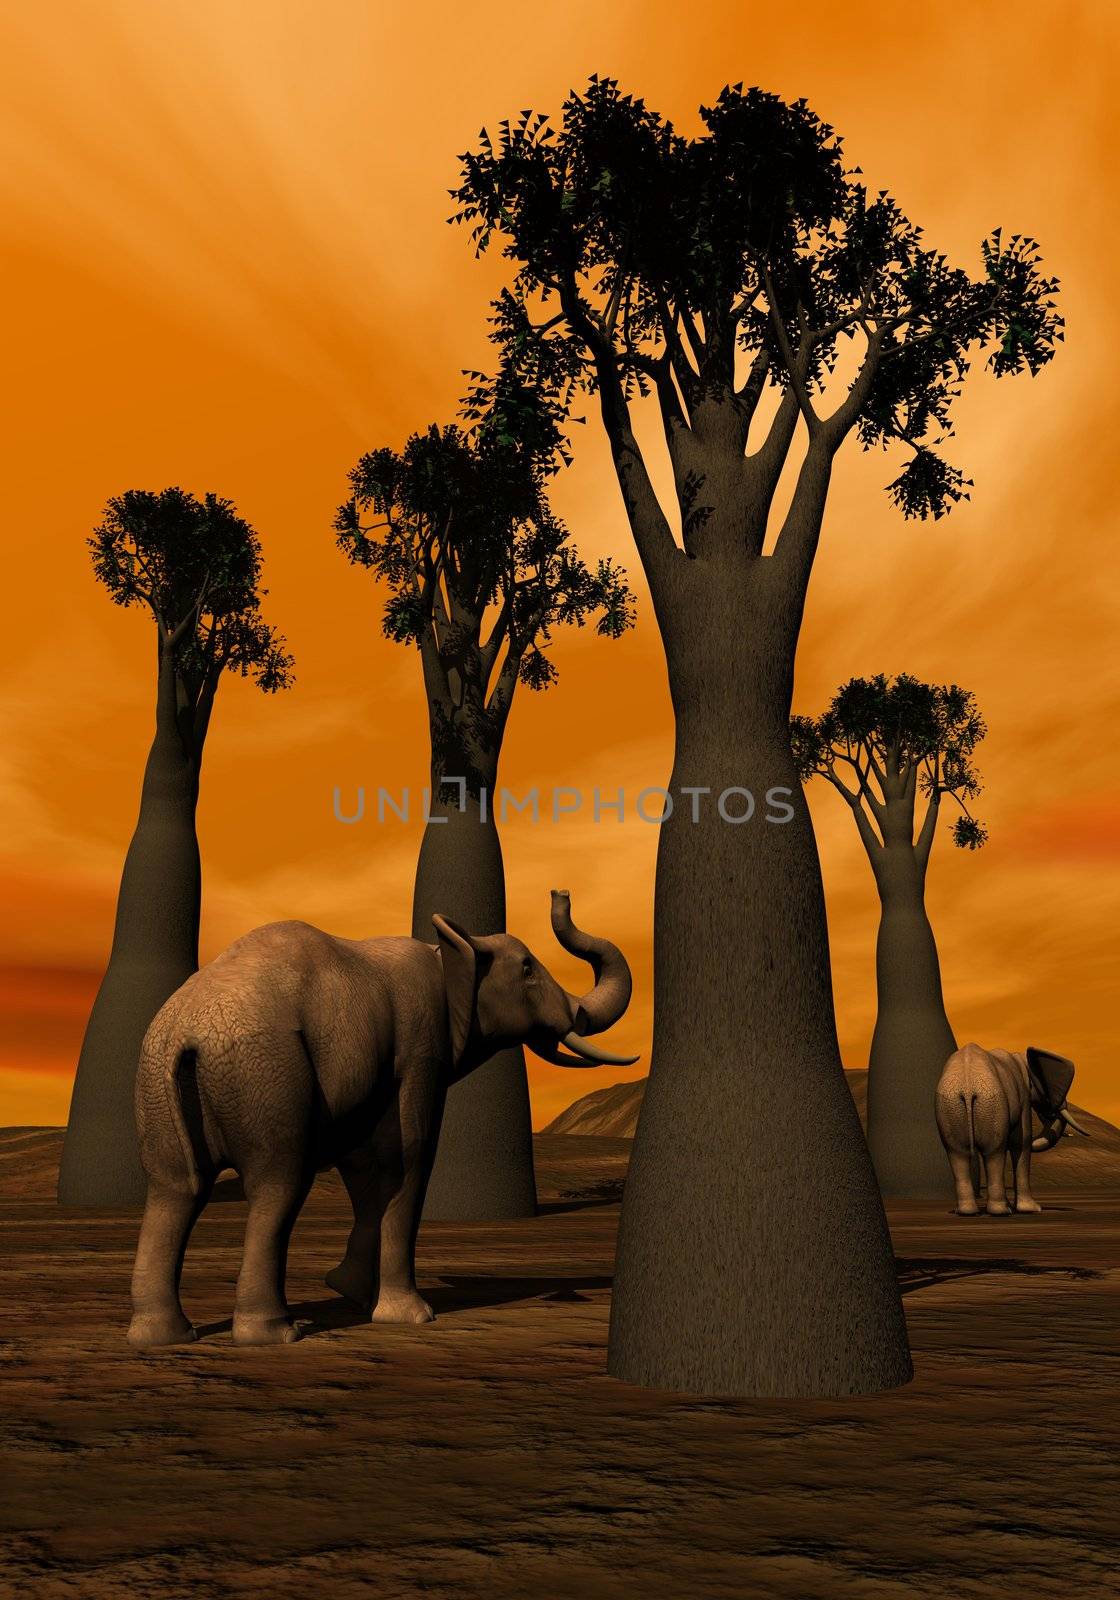 Elephants in the savannah by Elenaphotos21